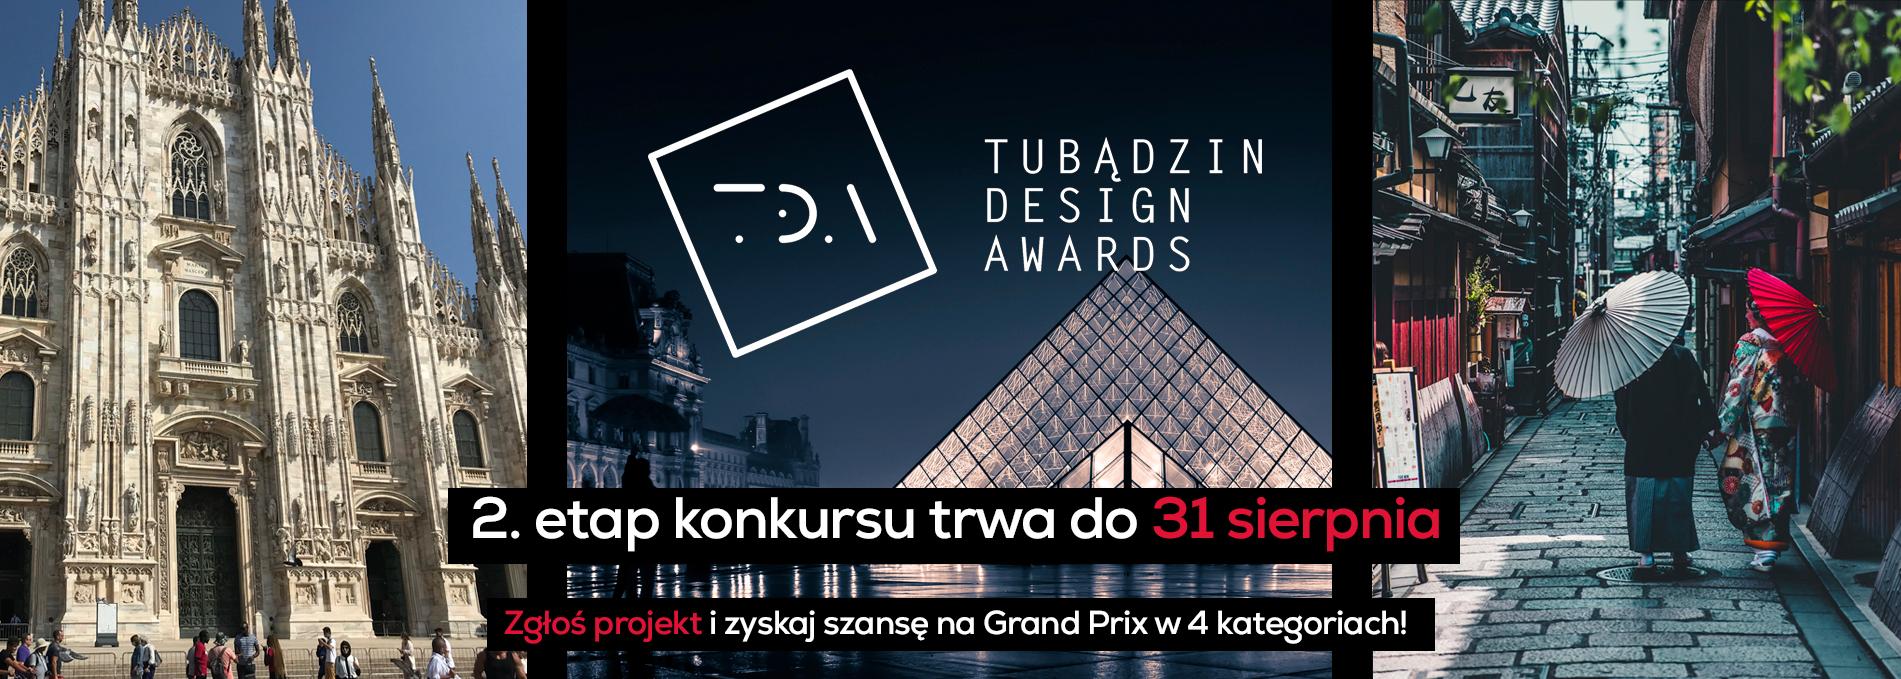 Zgłoś projekt do II etapu Tubądzin Design Awards